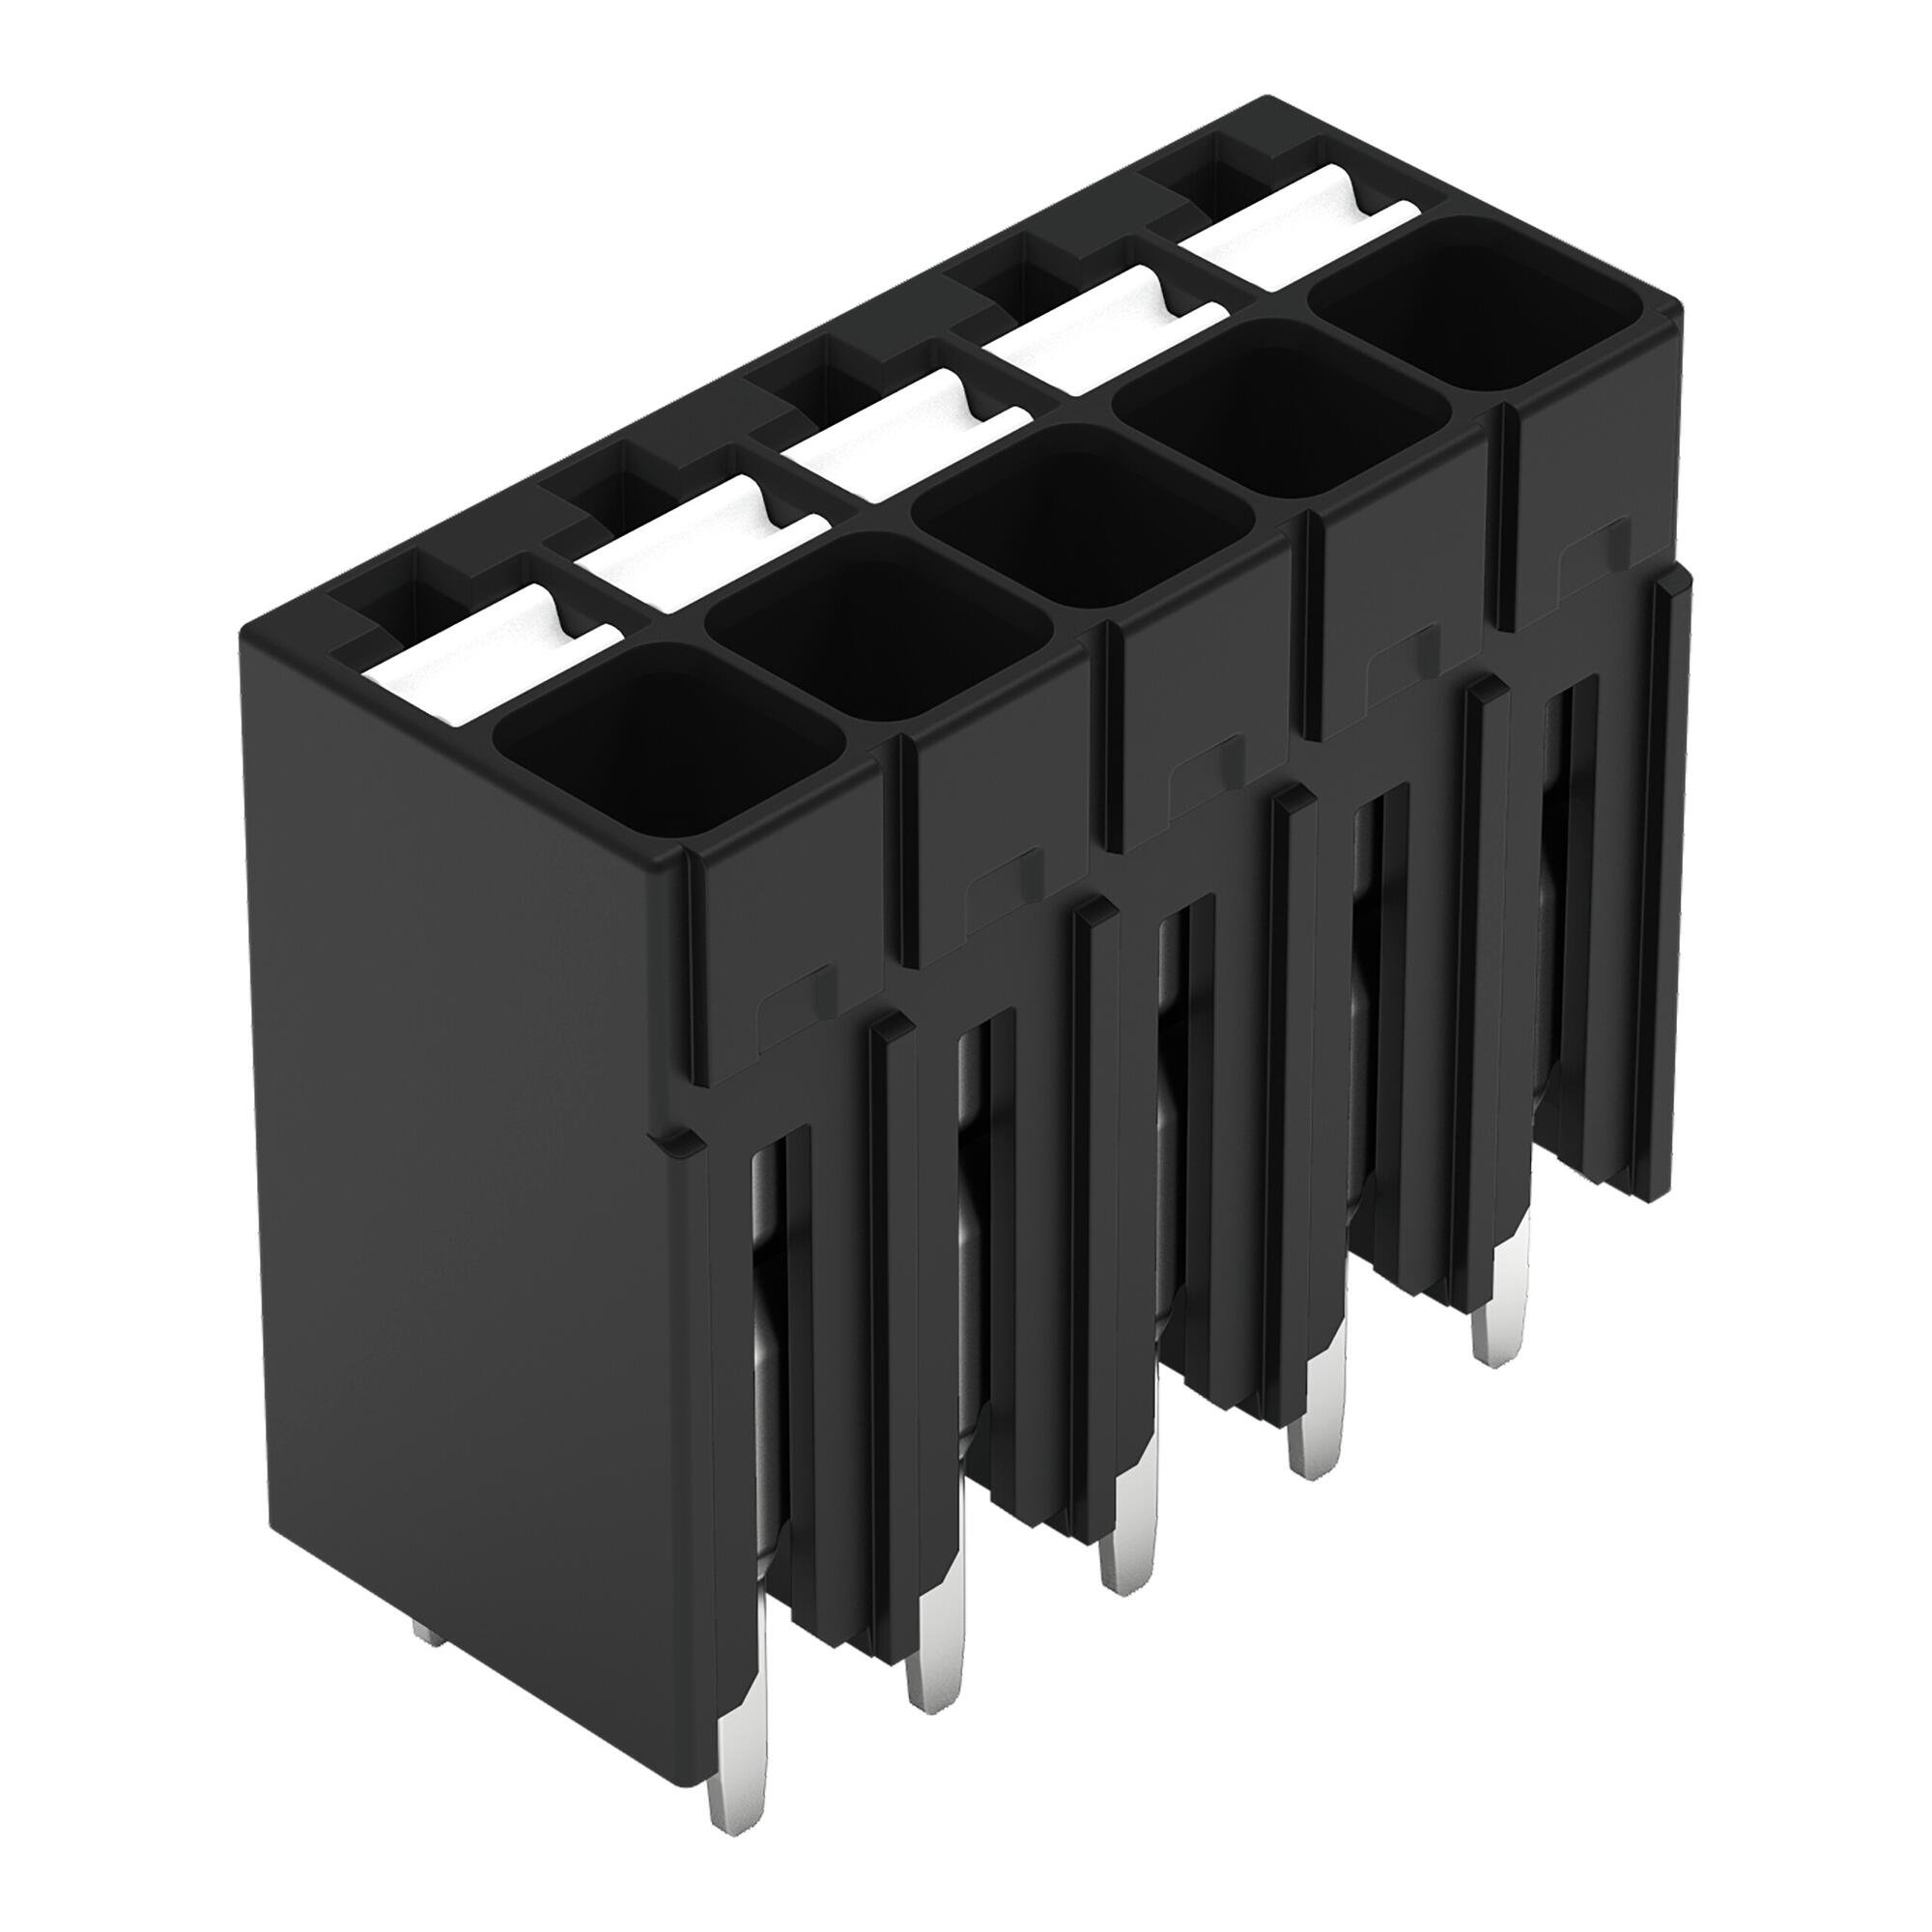 THR-Leiterplattenklemme; Drücker; 1,5 mm²; Rastermaß 3,5 mm; 5-polig; Push-in CAGE CLAMP®; Lötstiftlänge 1,5 mm; 1,50 mm²; schwarz